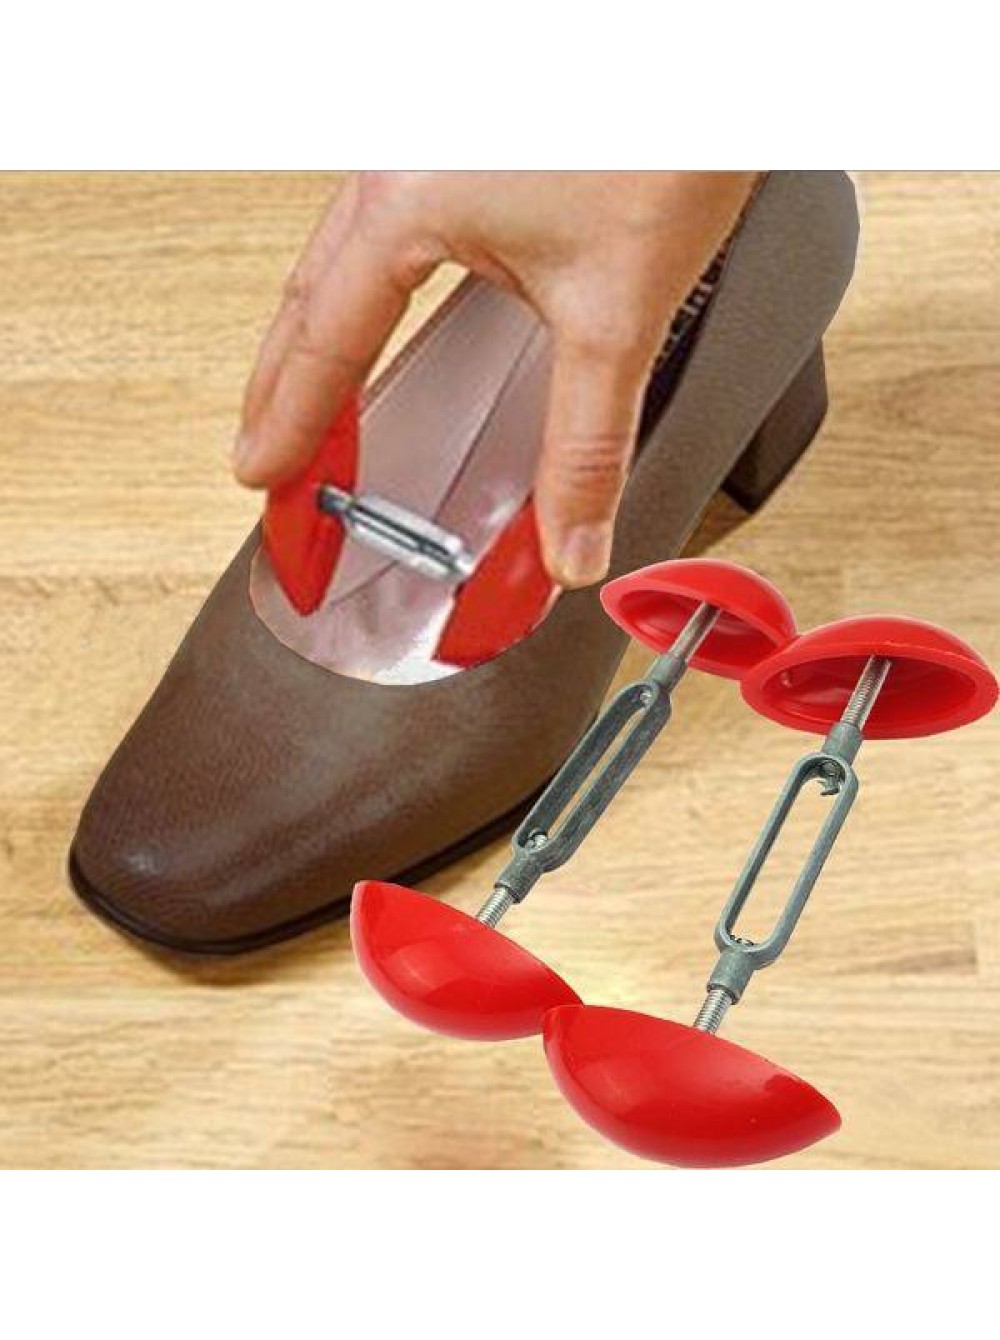 Растяжка обуви в домашних условиях, способы для разных материалов